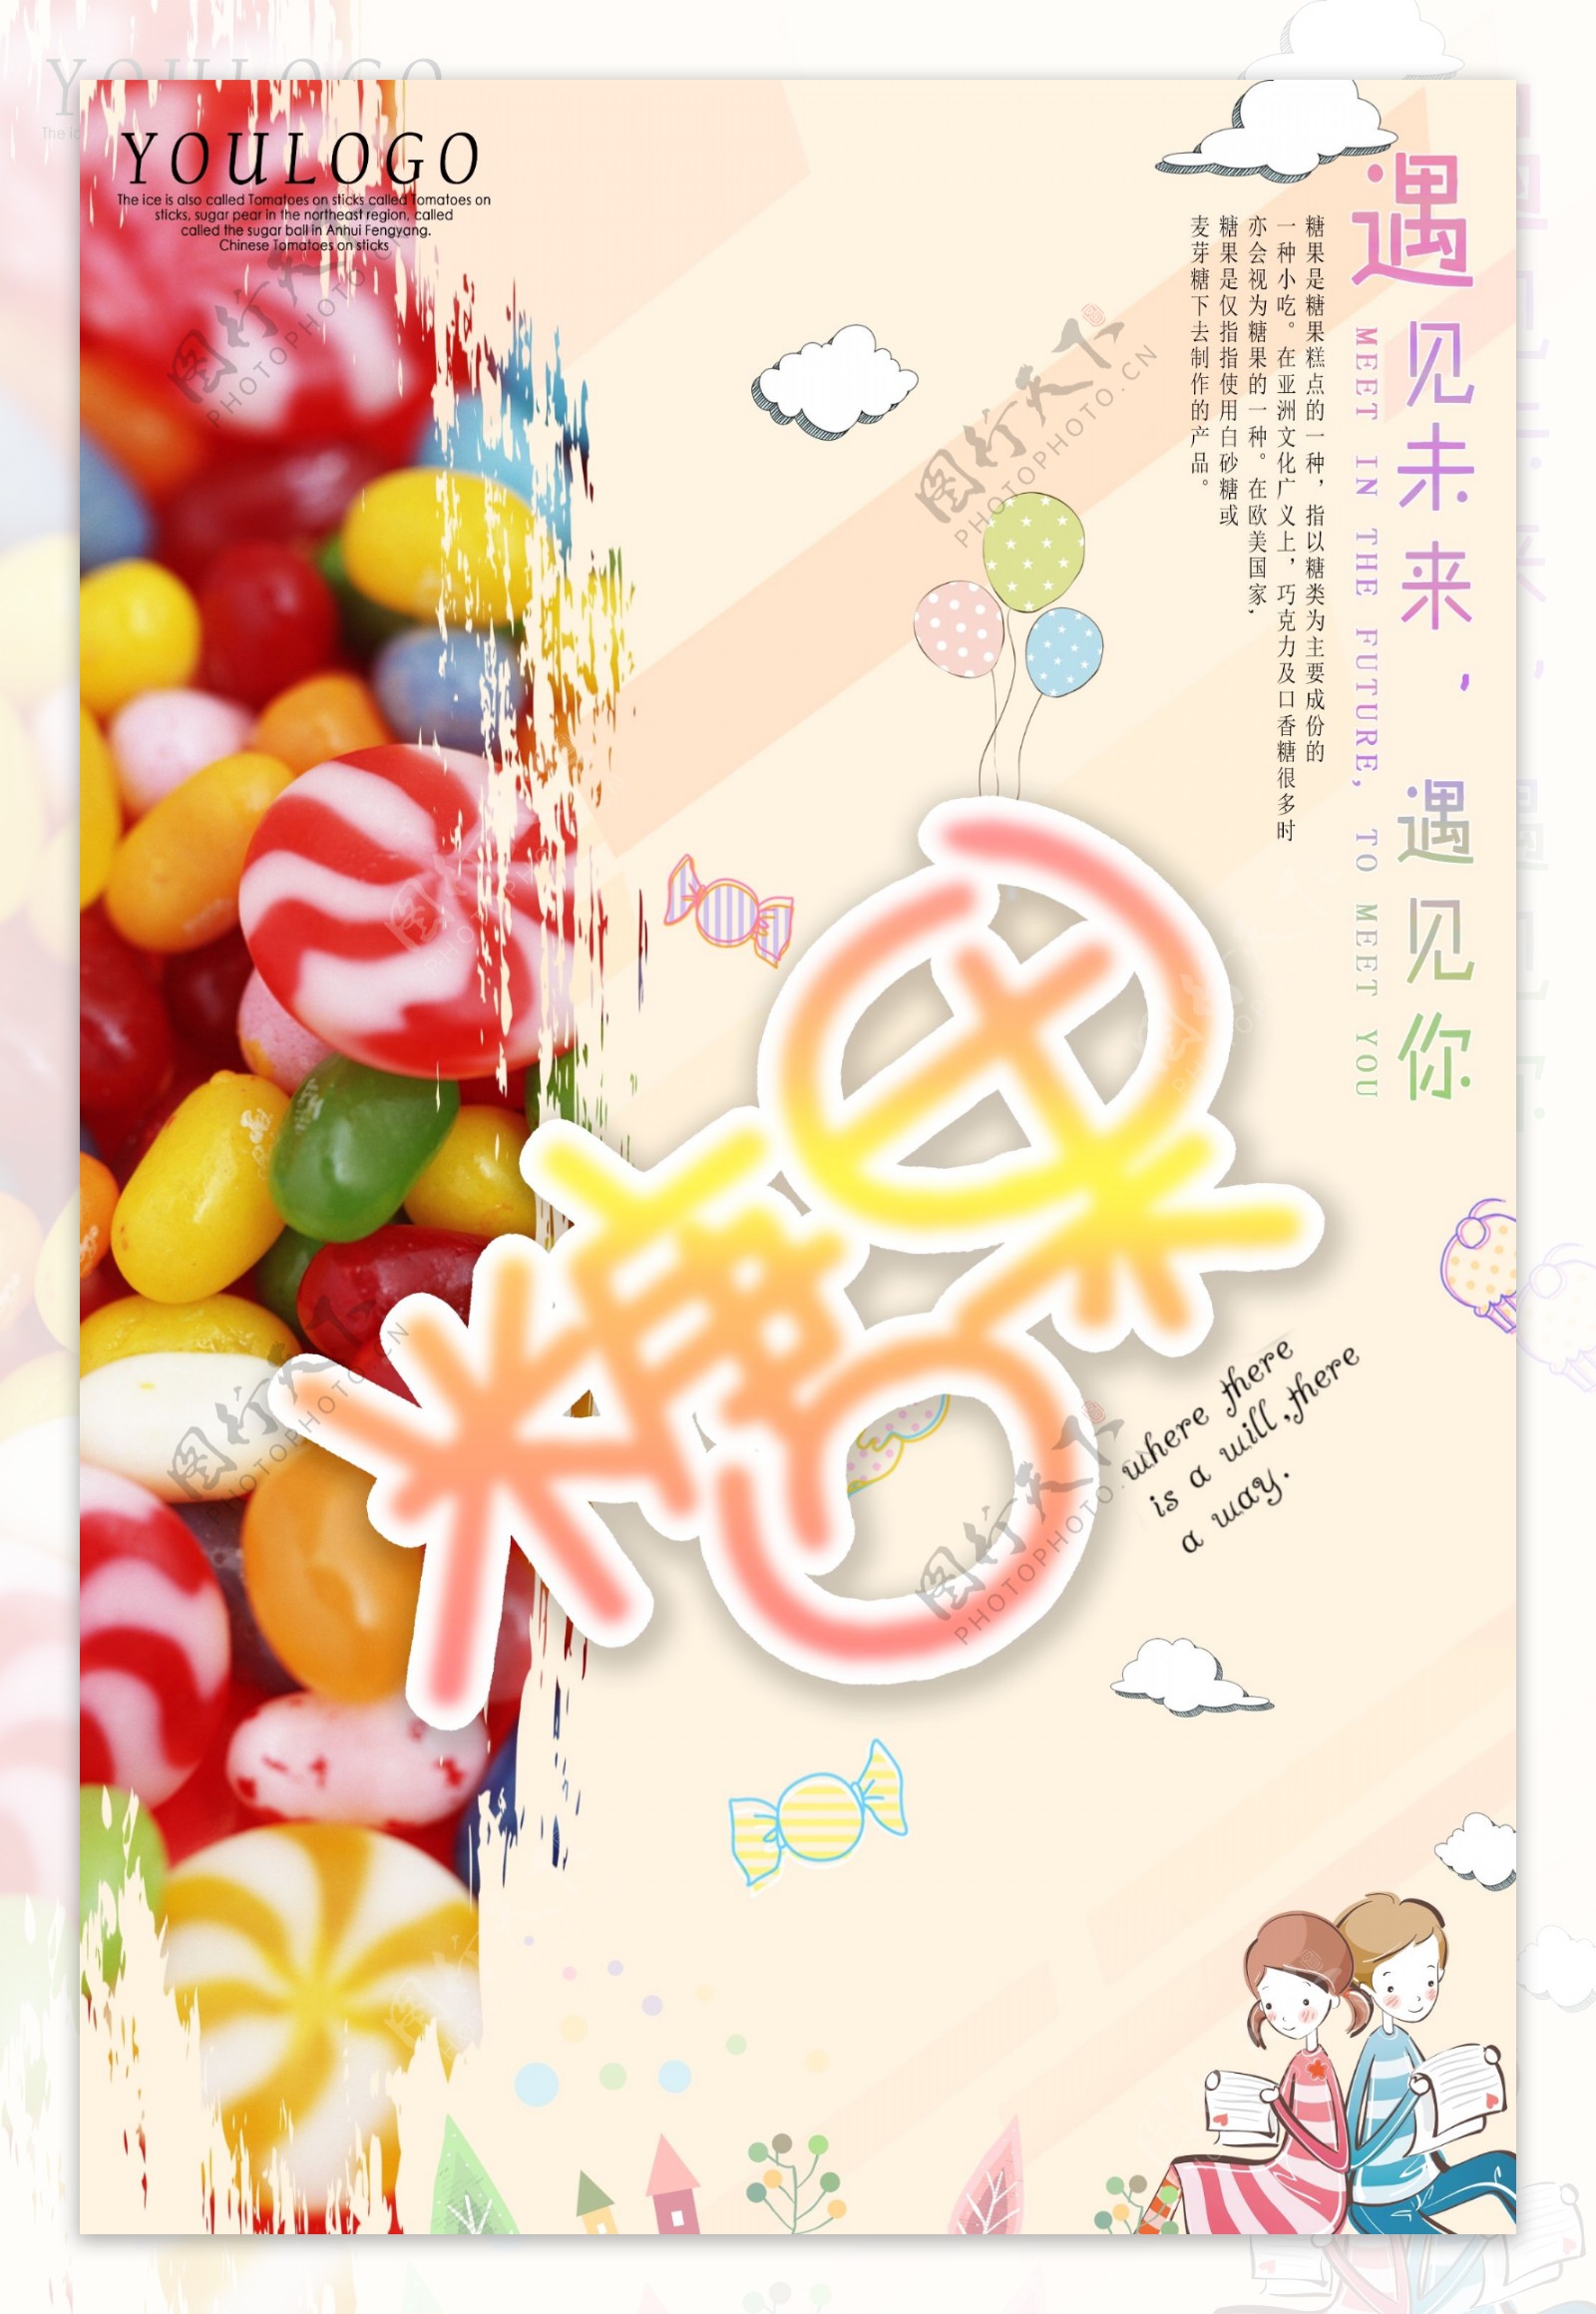 小清新的手绘风格糖果产品海报